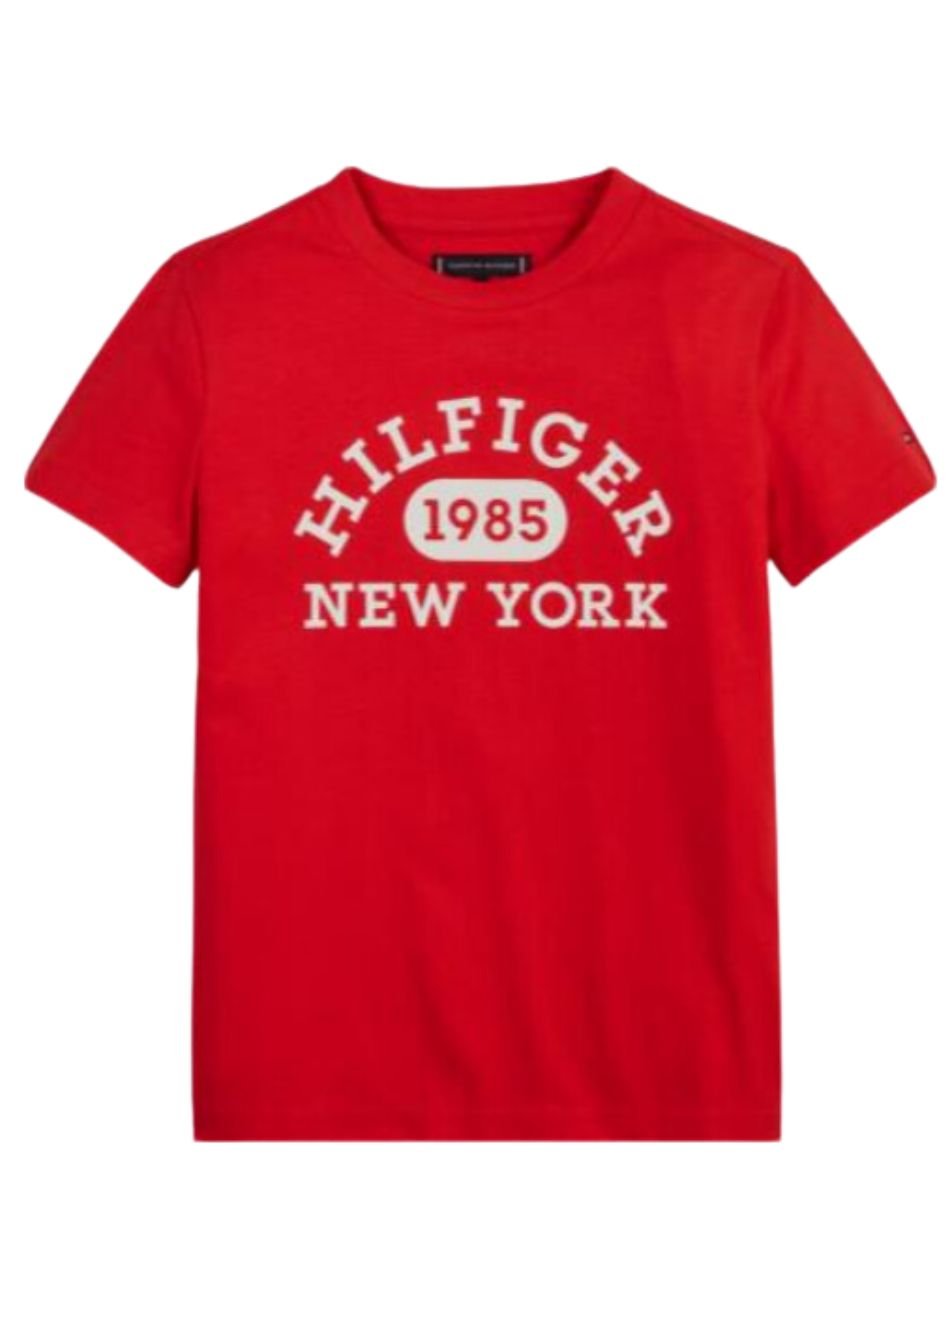 Camiseta Tommy Hilfiger Infantil Vermelha Logo1985